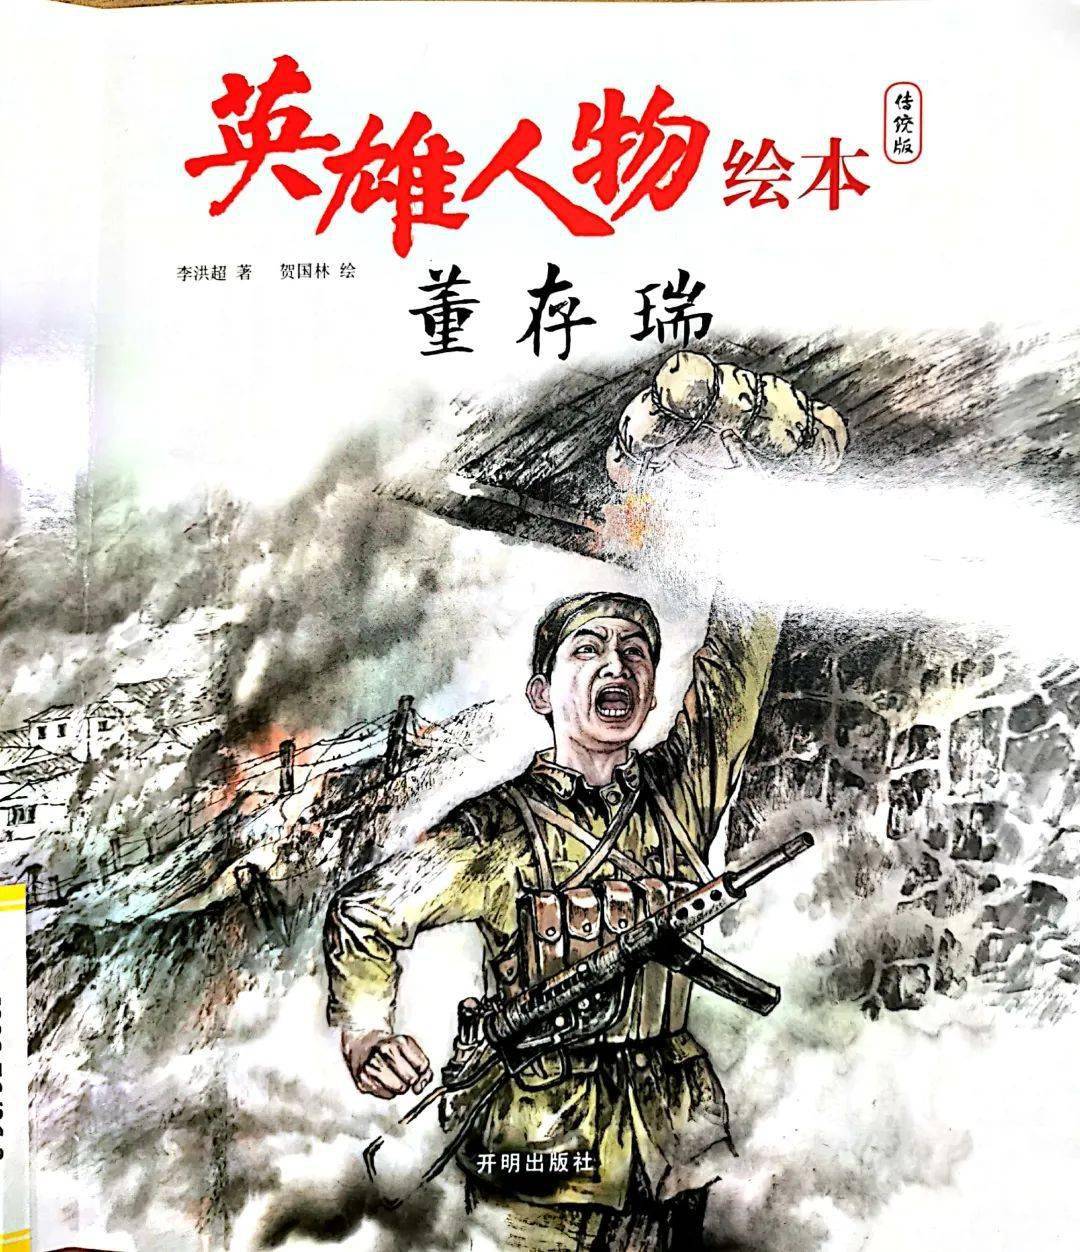 中国共产党成立100周年暨"一起听书,少图在线"栏目500期特辑——英雄